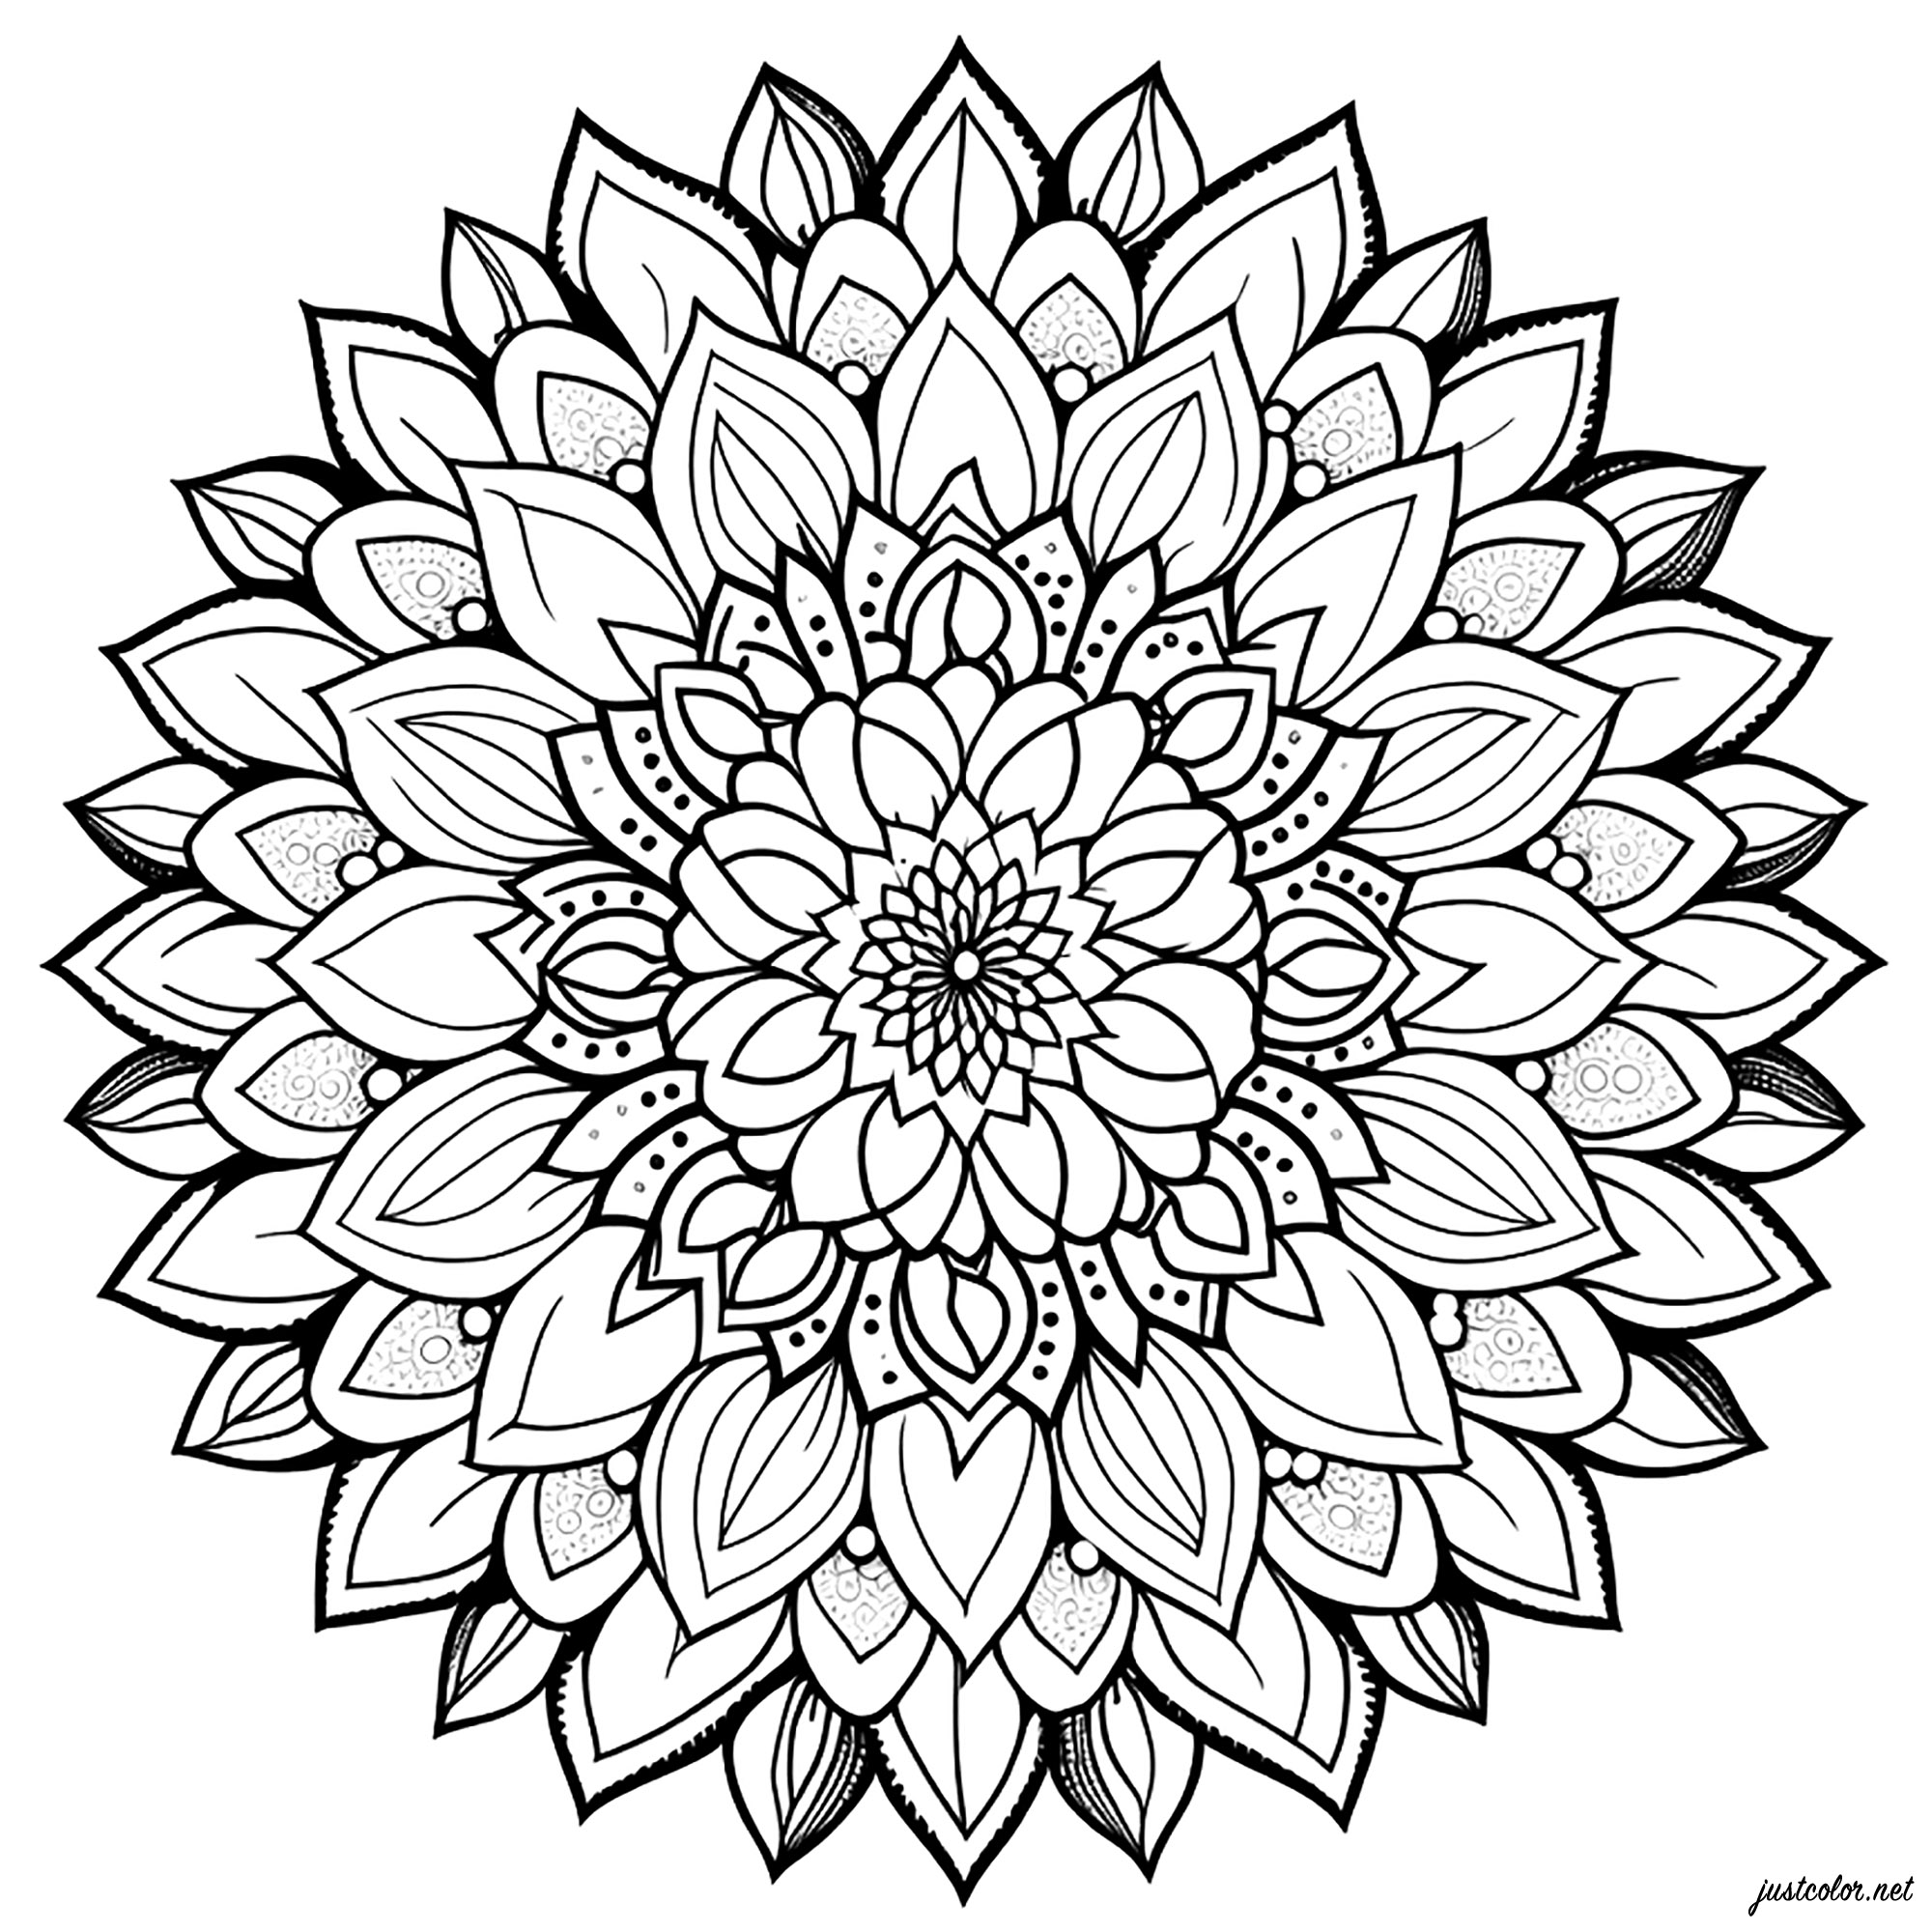 Mandala simple avec des pétales. Ce coloriage de mandala simple composé de pétales est très joli et facile à réaliser. Il est composé de fleurs et de pétales de fleurs qui s'emboîtent parfaitement les unes dans les autres.